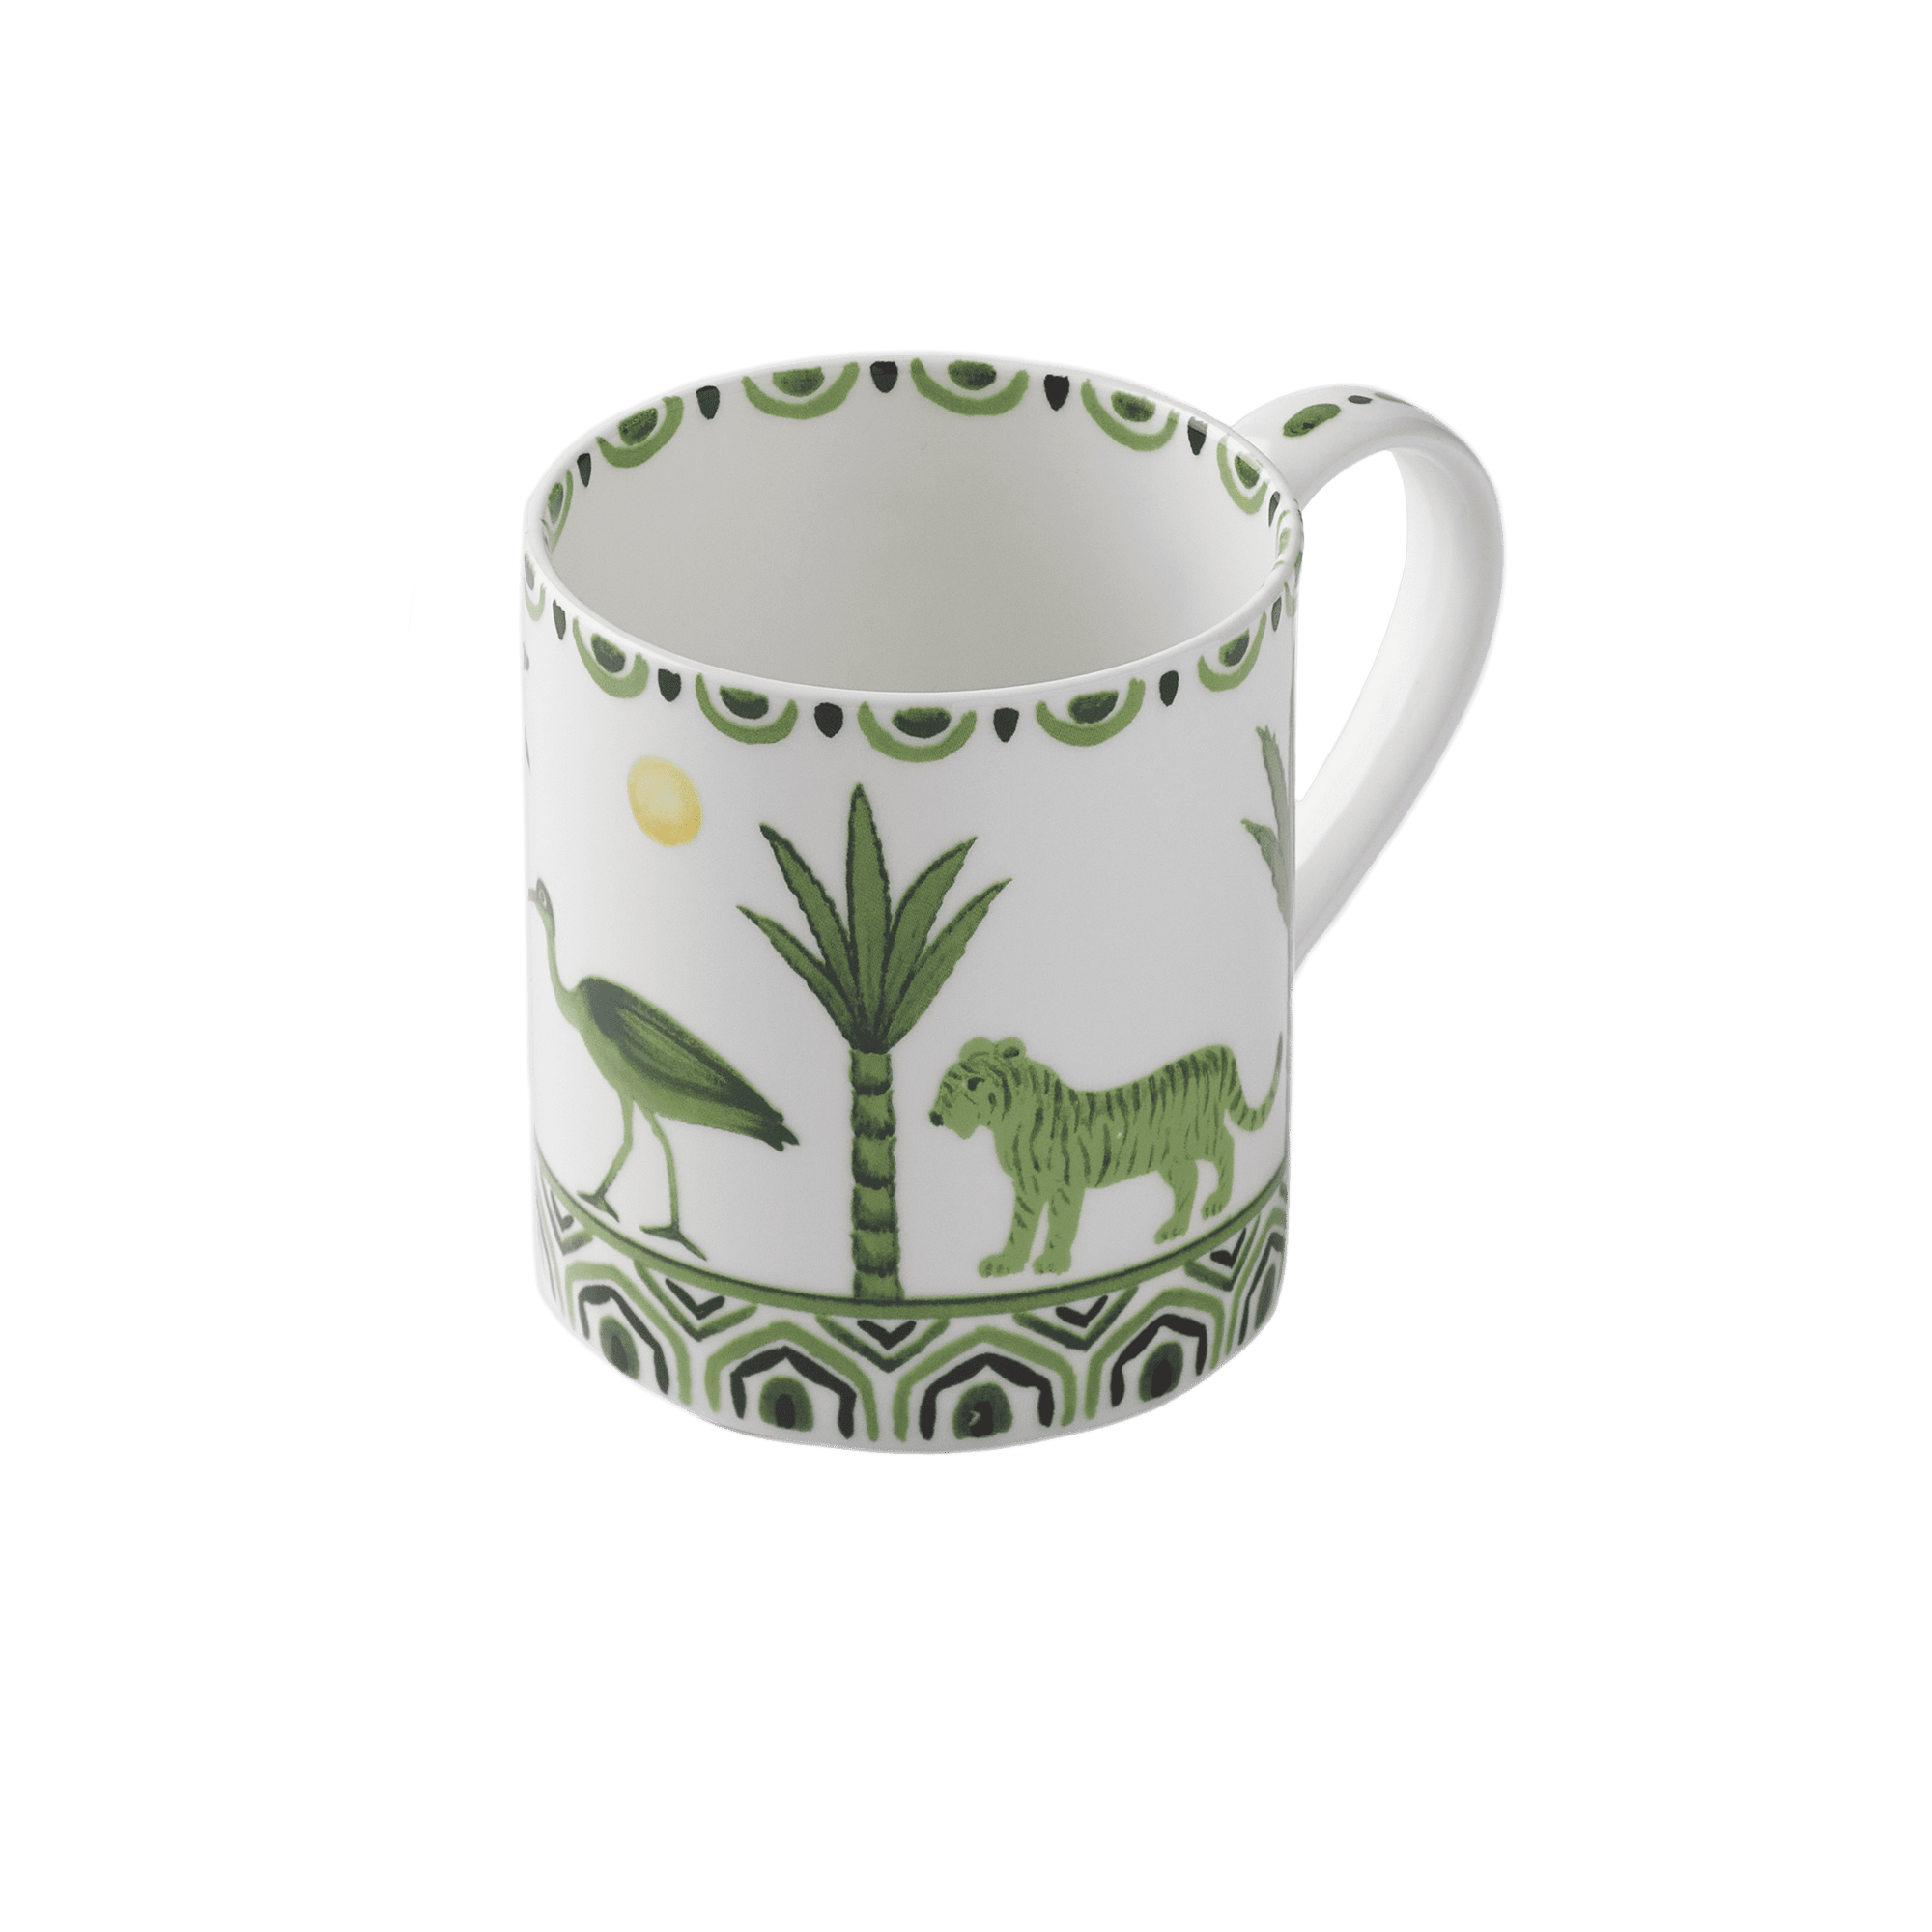 Sultan's Garden Mug